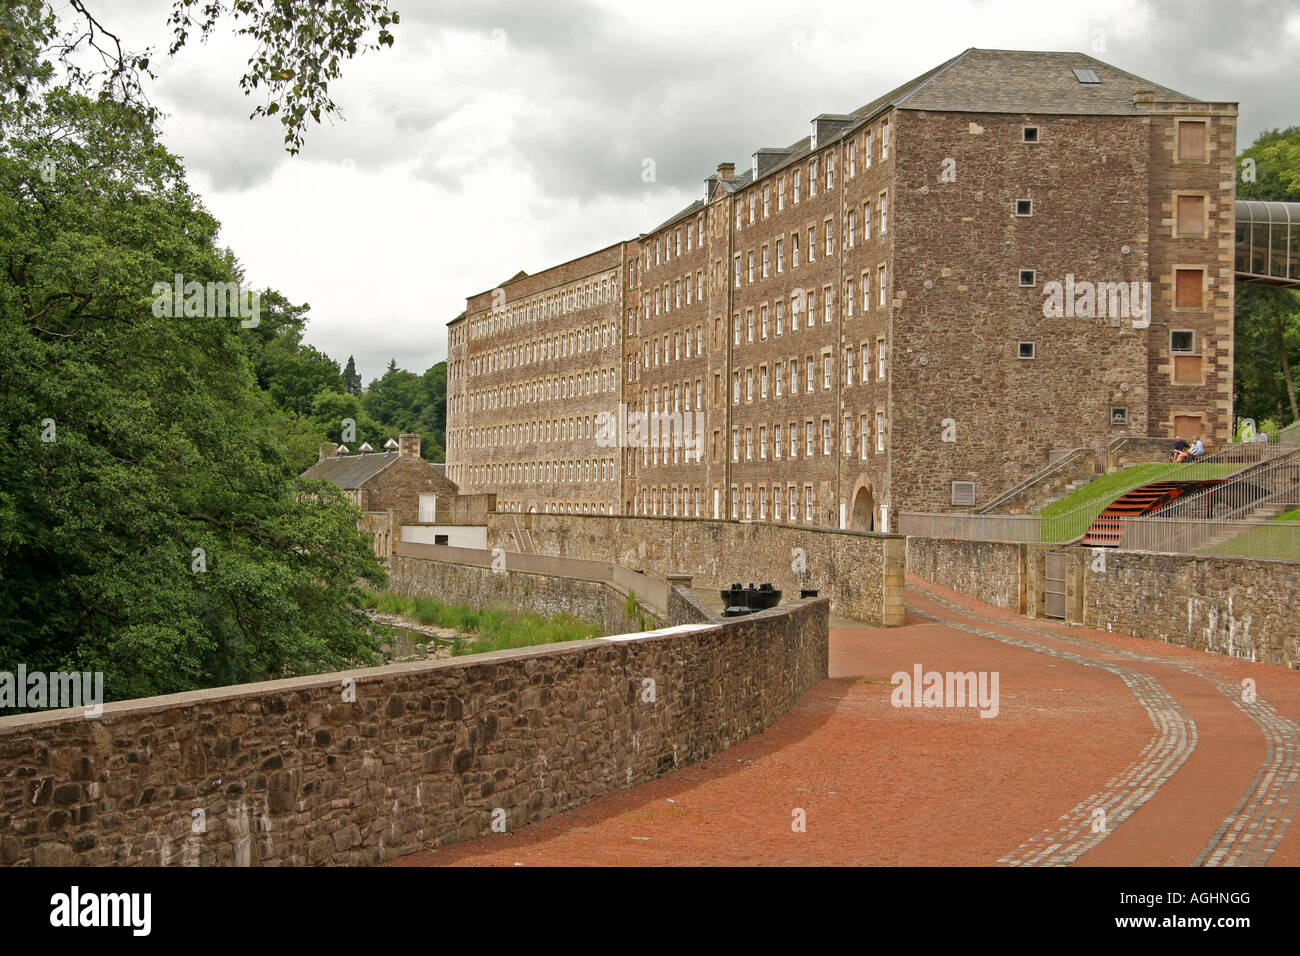 New Lanark Mill, UNESCO World Heritage site, Lanark, en Ecosse, Royaume-Uni Banque D'Images